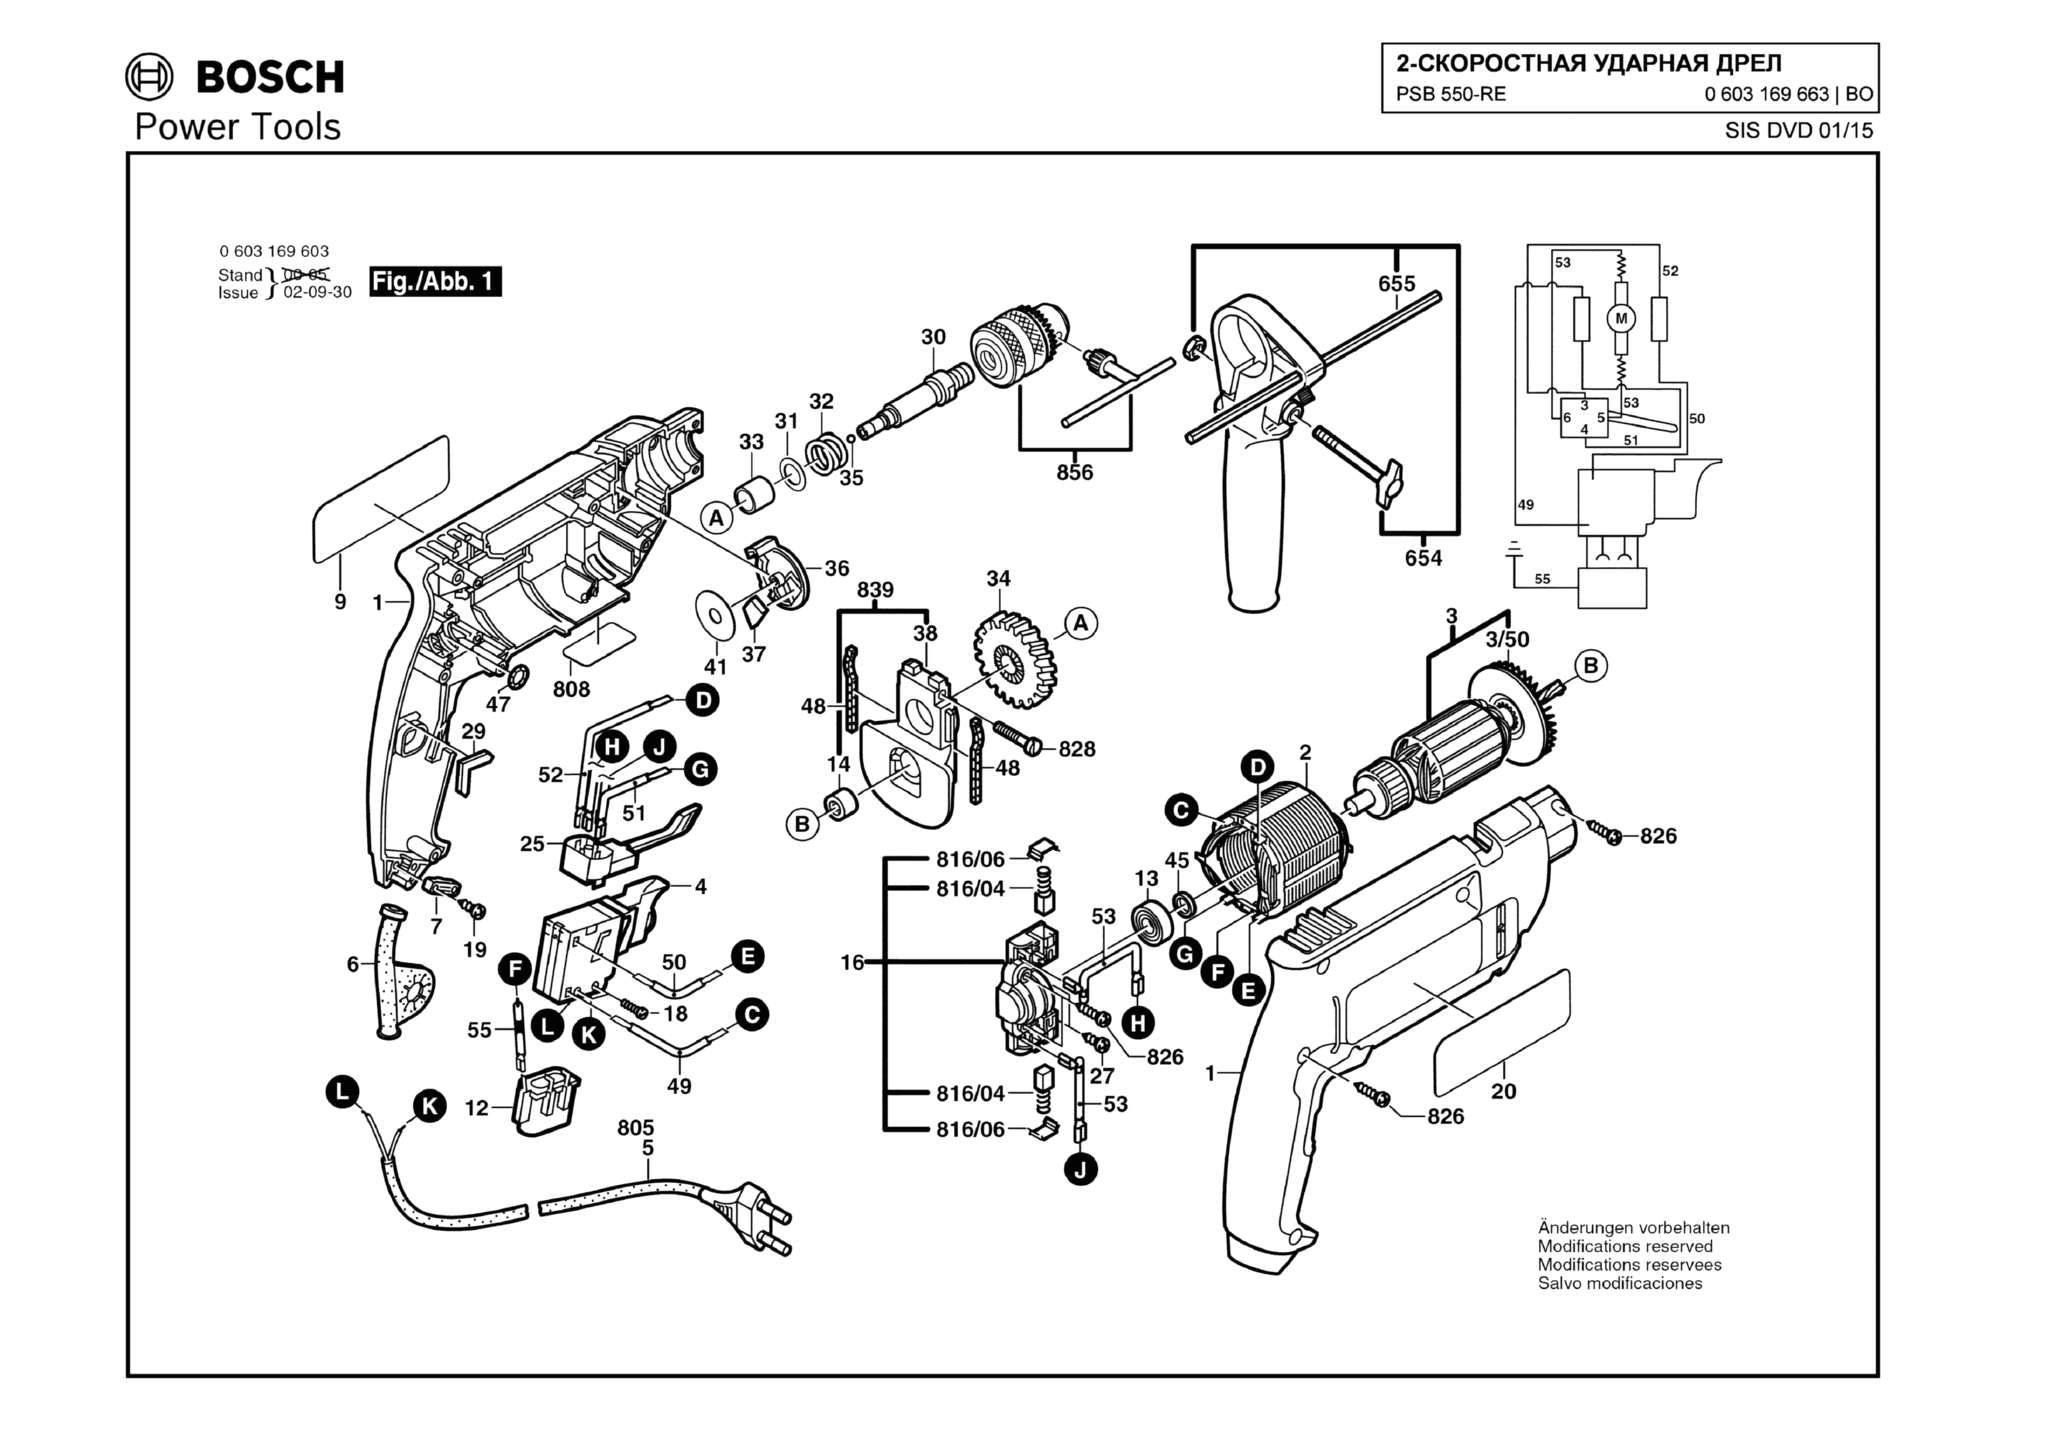 Запчасти, схема и деталировка Bosch PSB 550-RE (ТИП 0603169663)